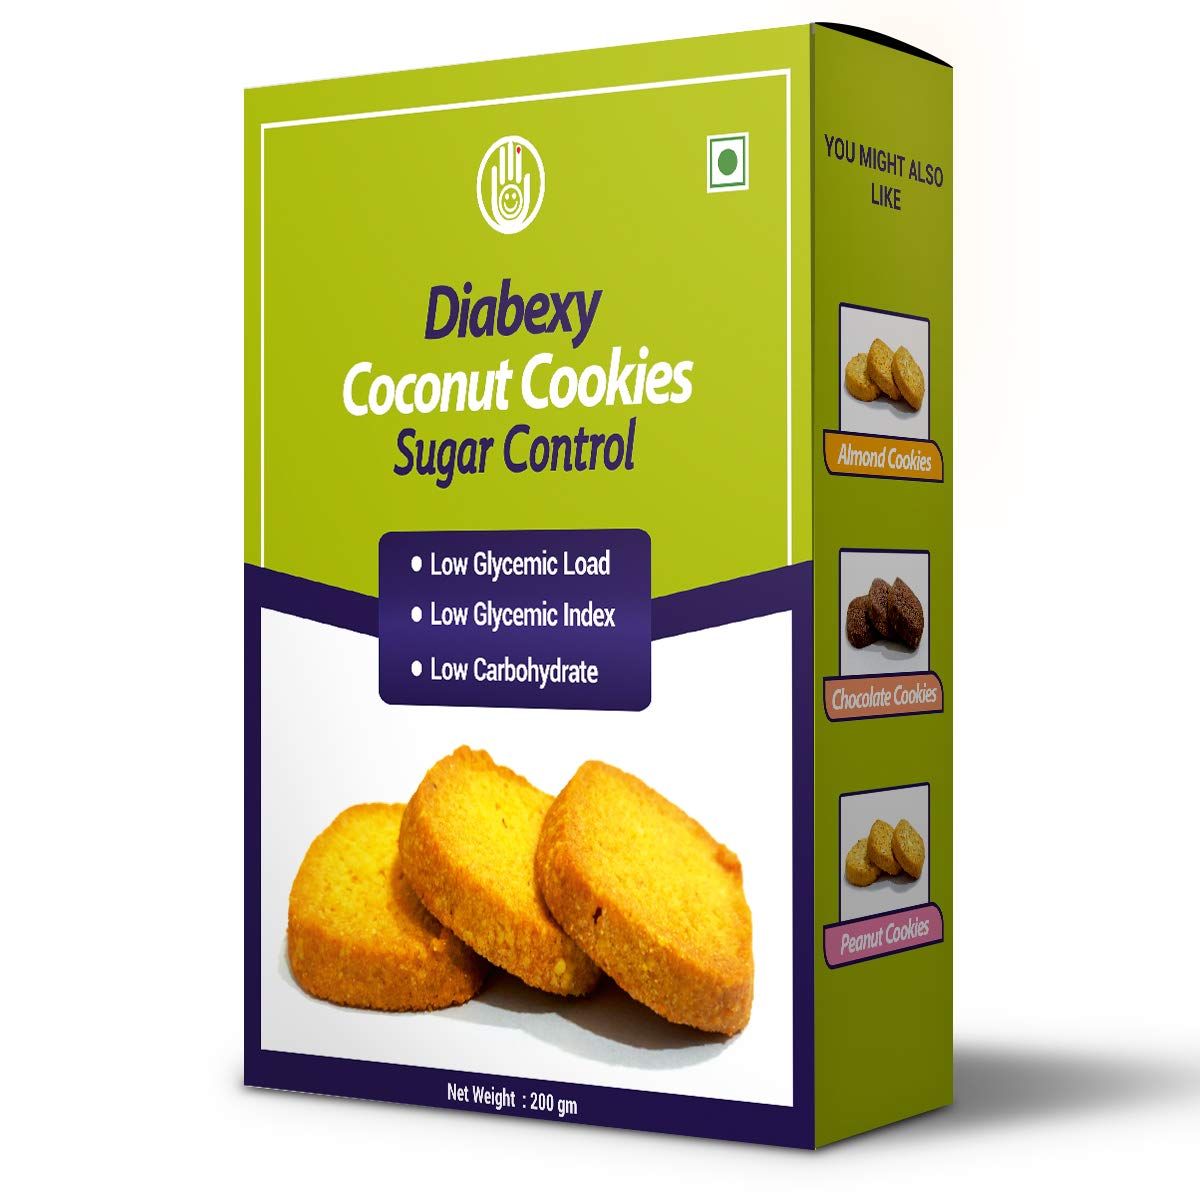 Diabexy Coconut Cookie Sugar Control for Diabetes Image